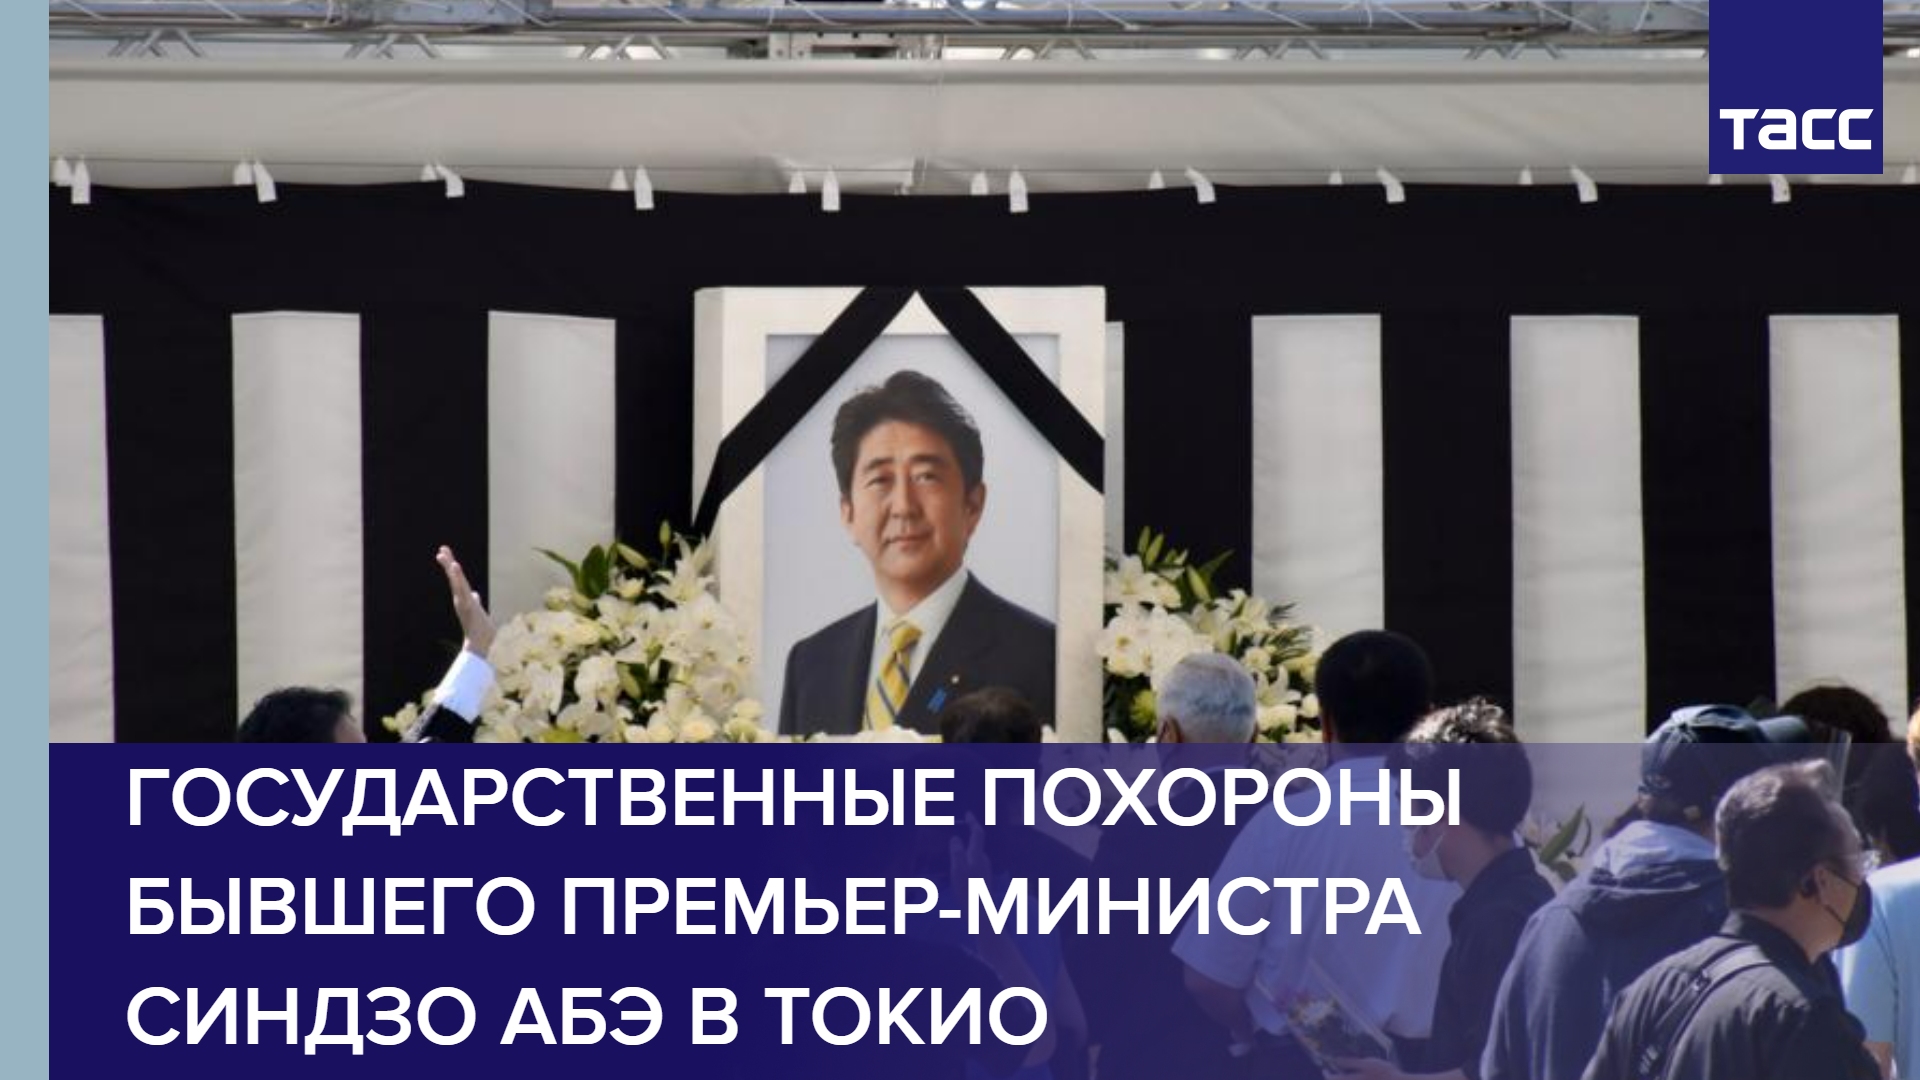 Государственные похороны бывшего премьер-министра Синдзо Абэ в Токио